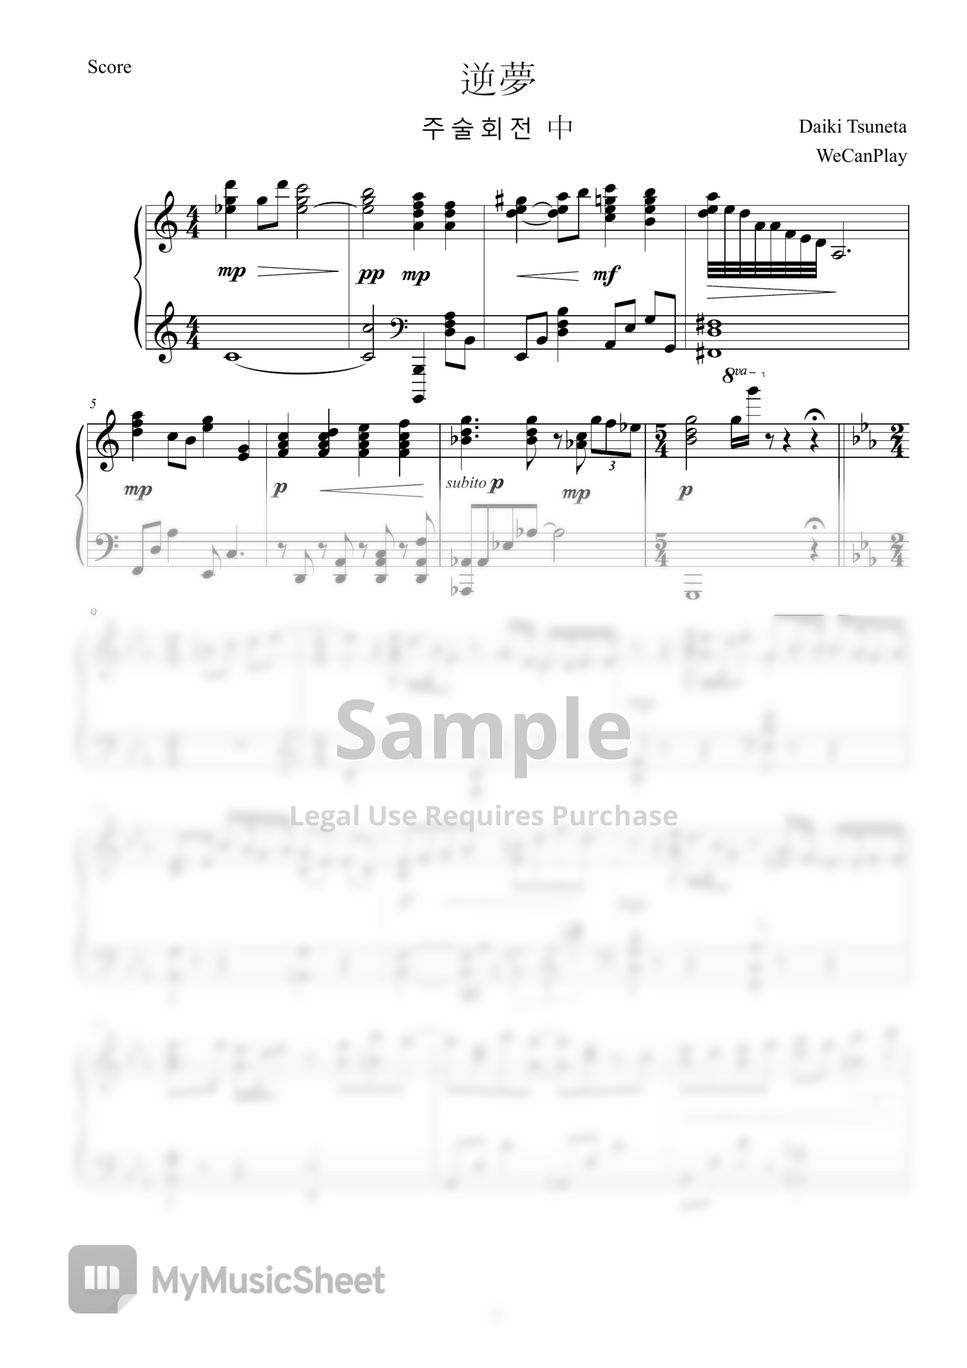 King Gnu - Sakayume(Jujutsu KaisenOST) (piano solo/Sakayume/Jujutsu KaisenOST) by WeCanPlay